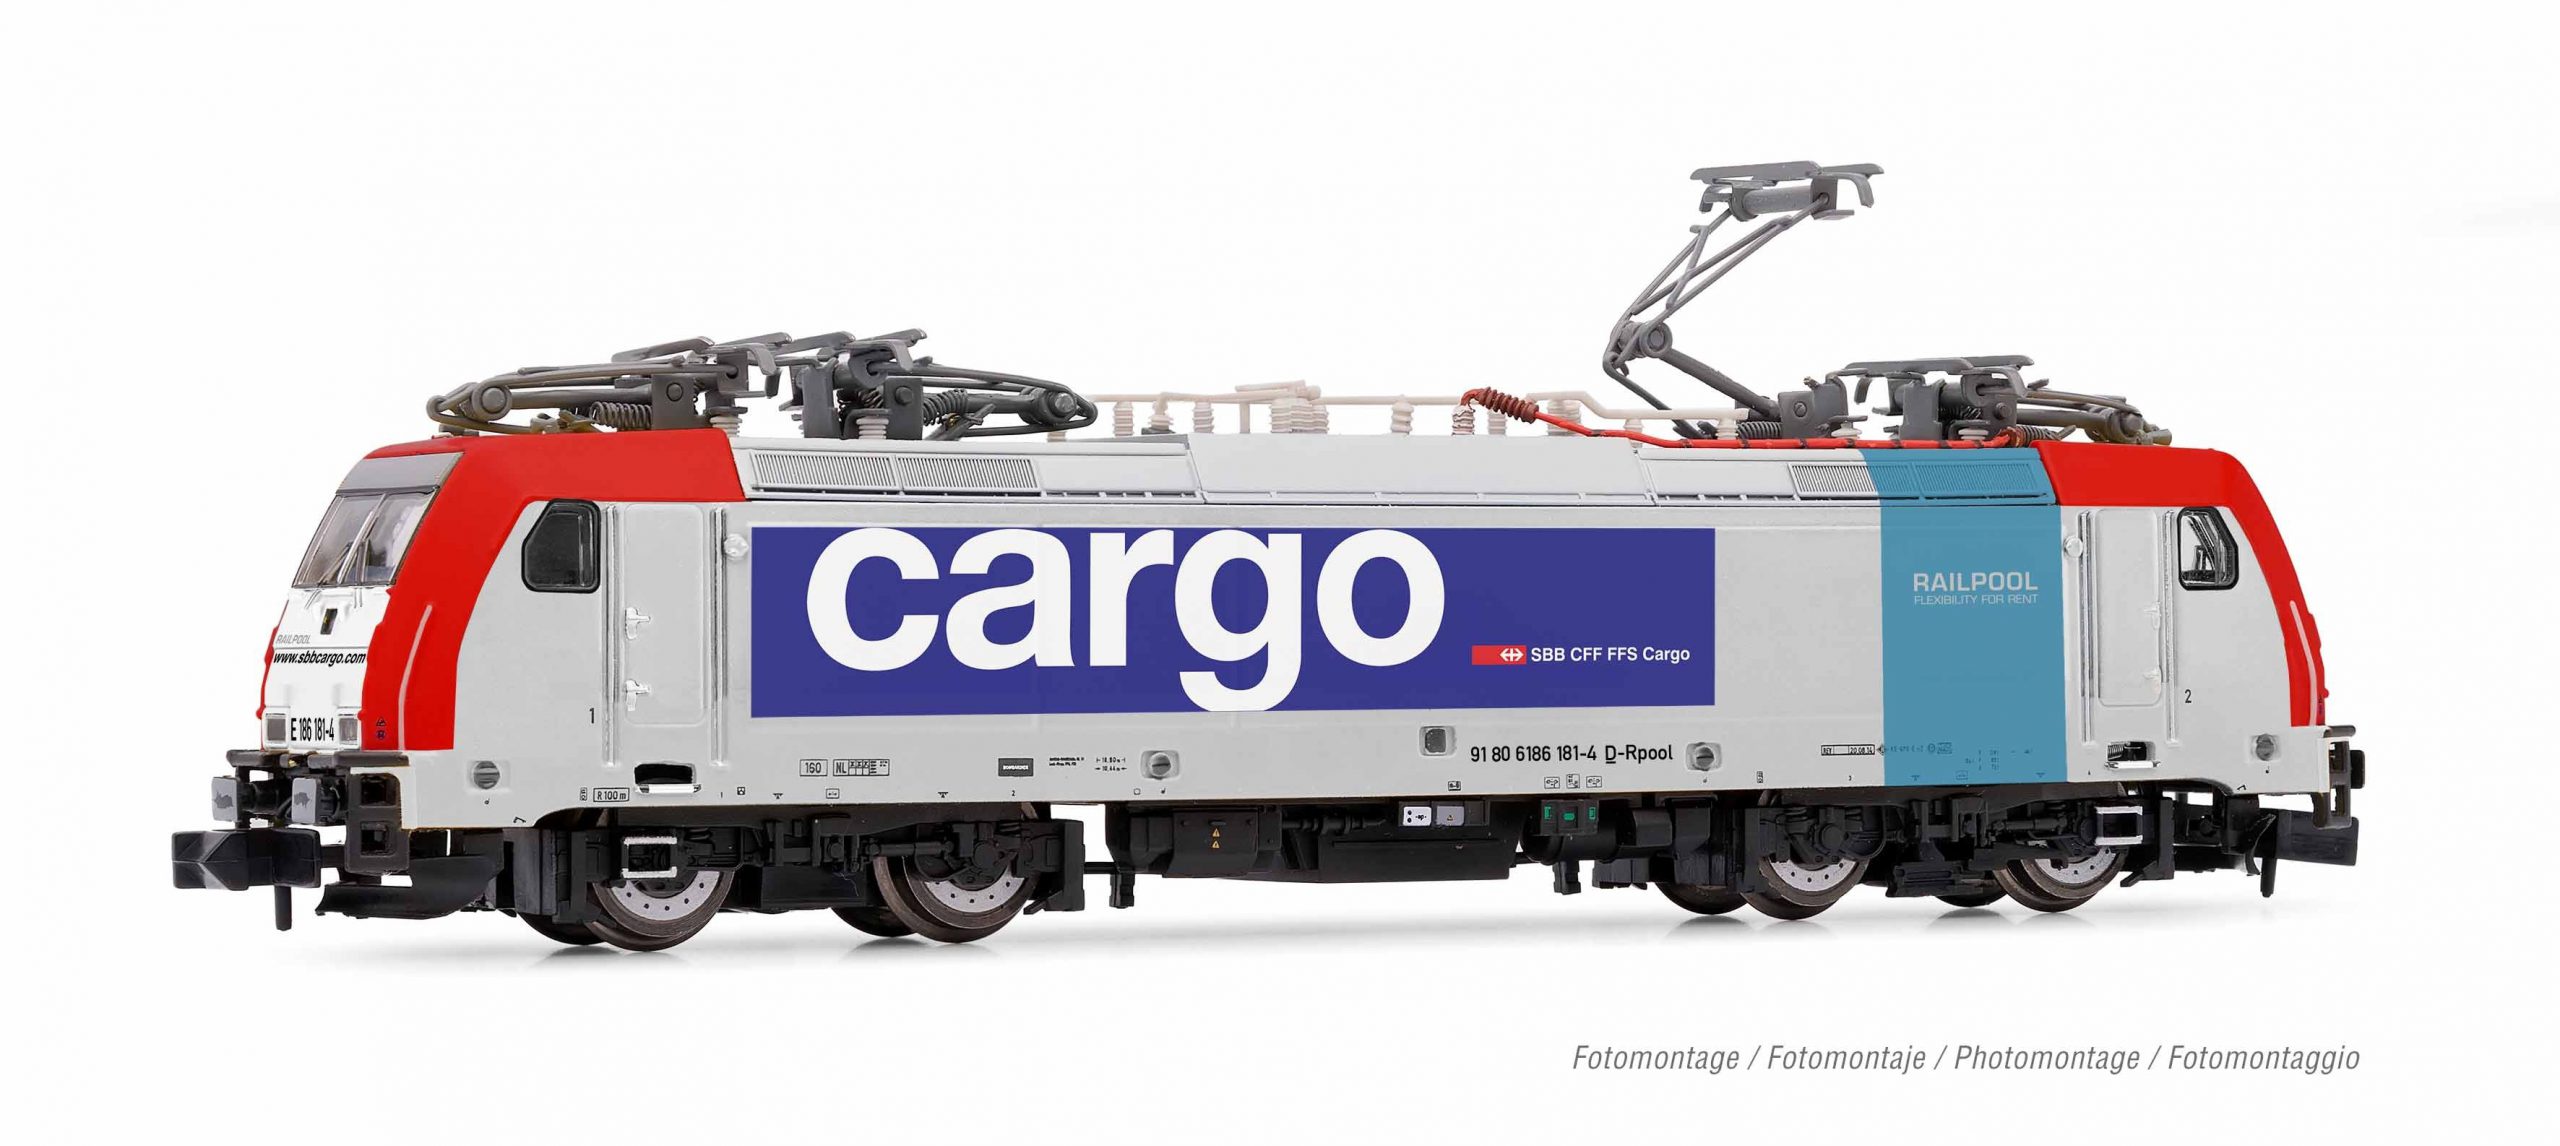 Arnold – Locomotora Electrica Cargo Clase 186 181-4, Epoca VI, Analogica, Escala N. Ref: HN2459.